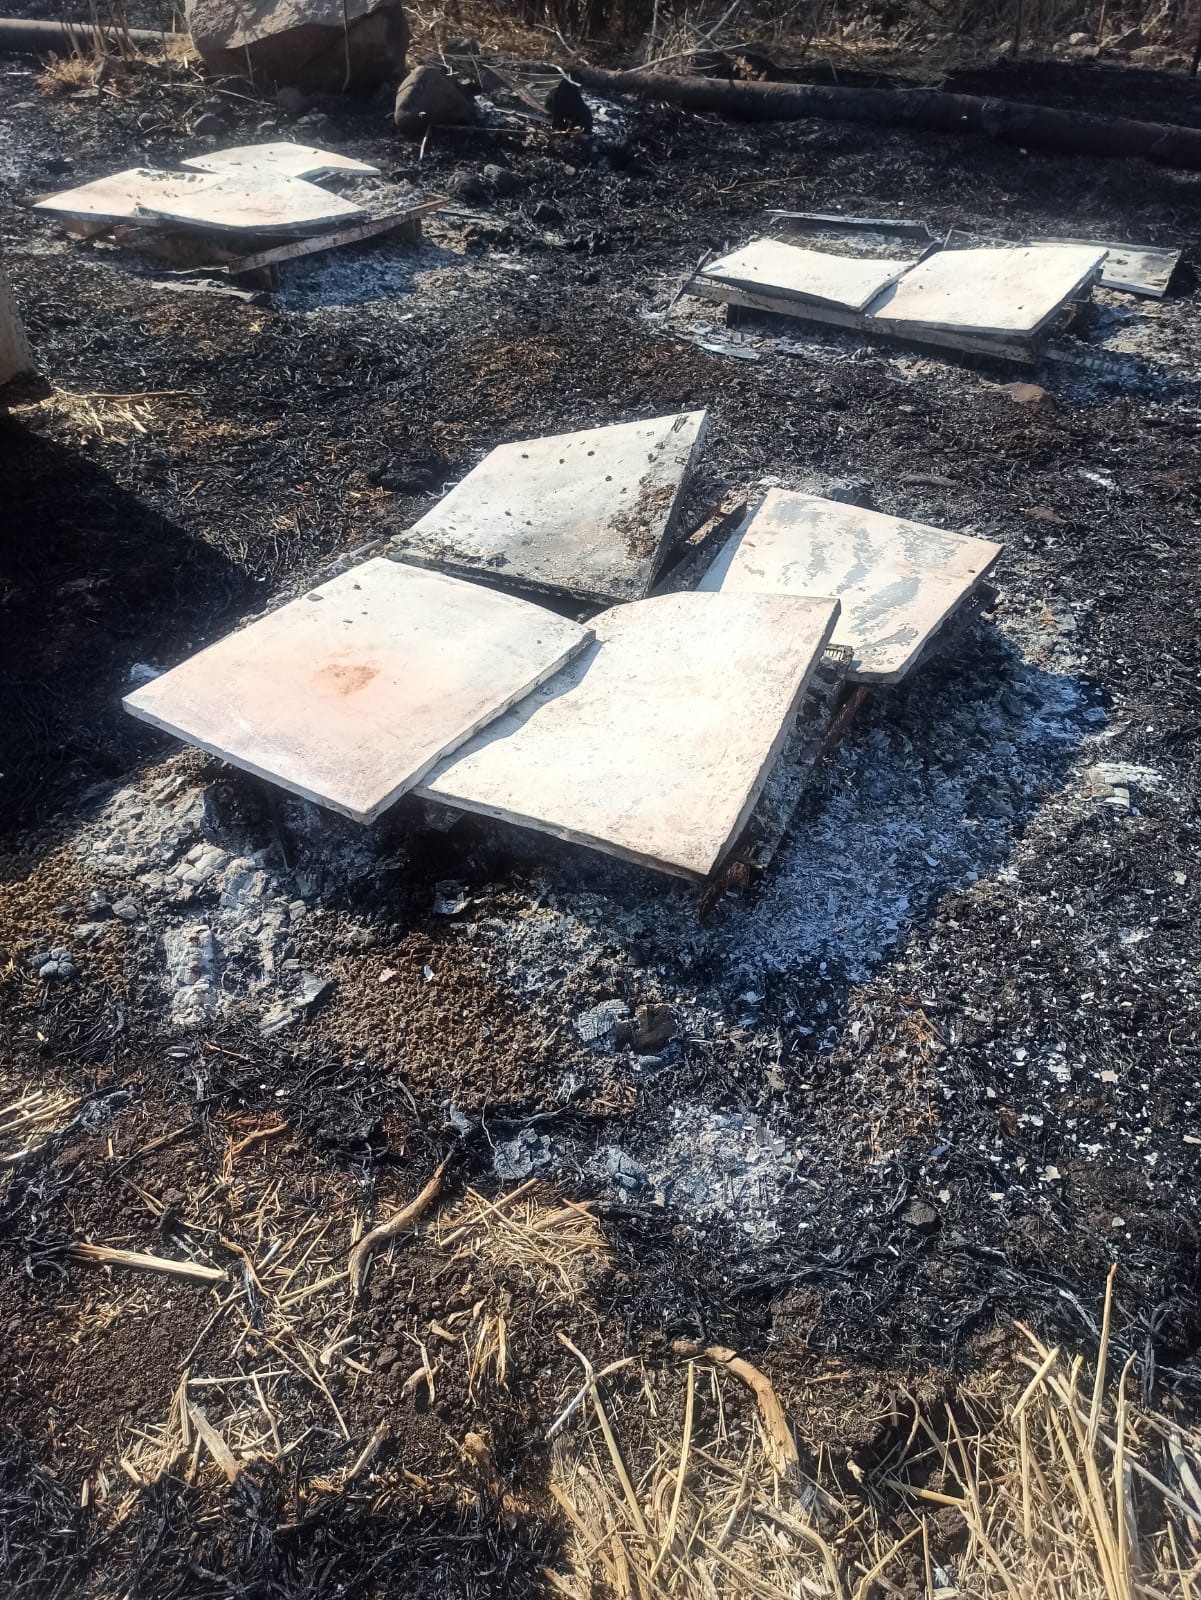 48 כוורות שהכילו כטון דבש נשרפו כליל בשריפה בשבוע שעבר בסמוך לפארק הירדן